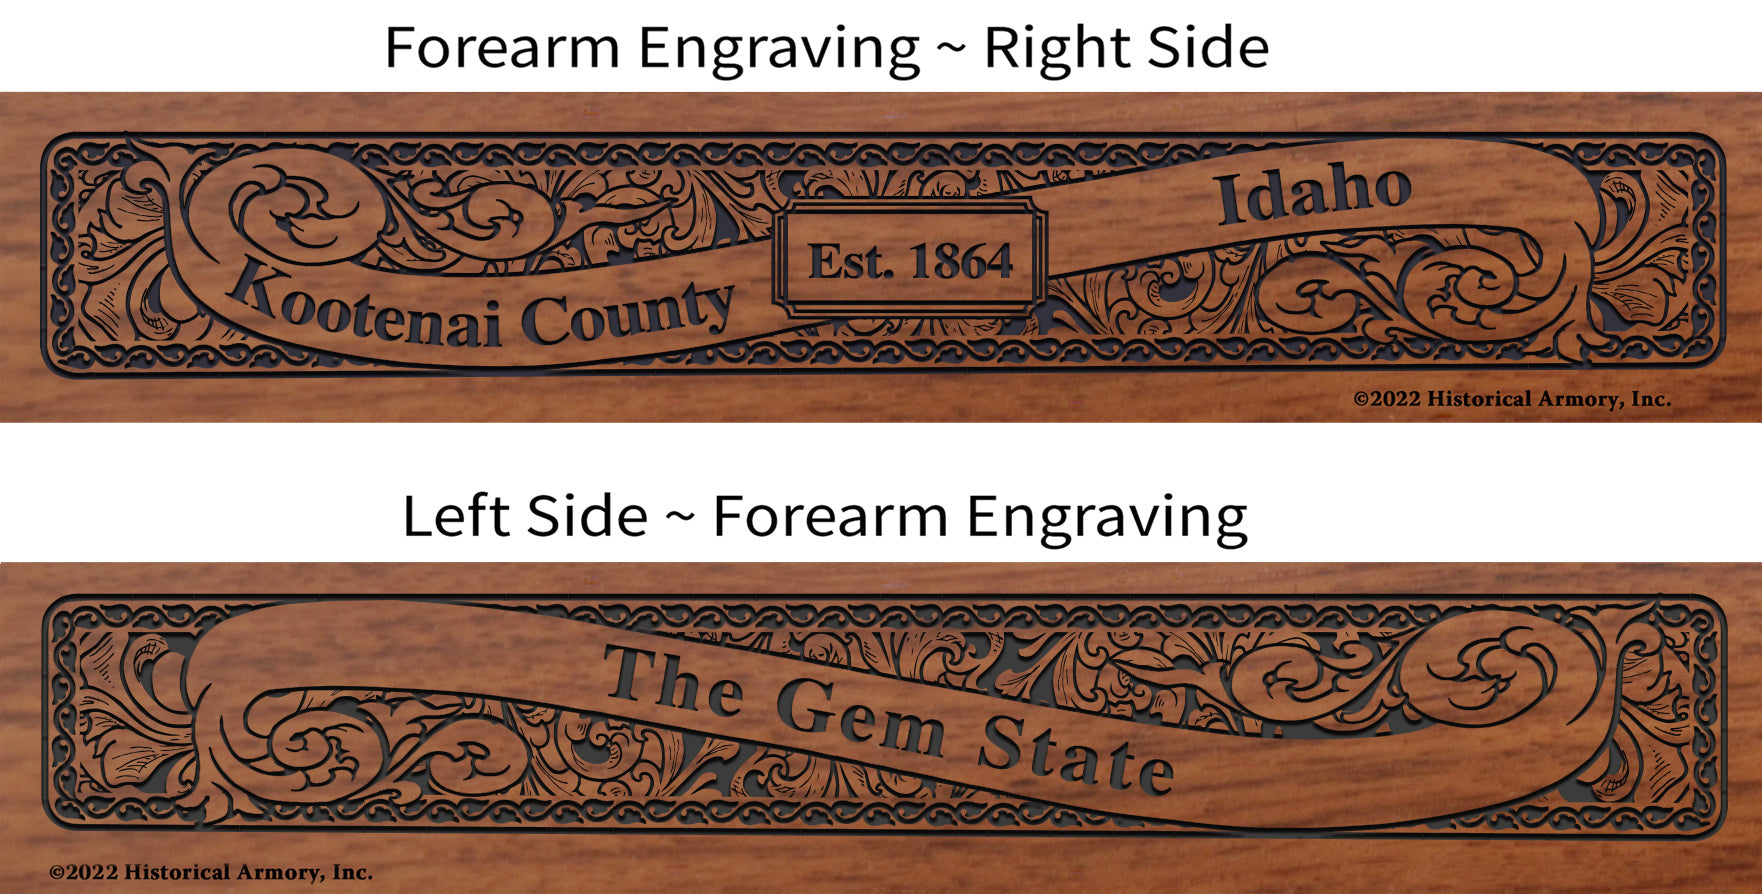 Kootenai County Idaho Engraved Rifle Forearm